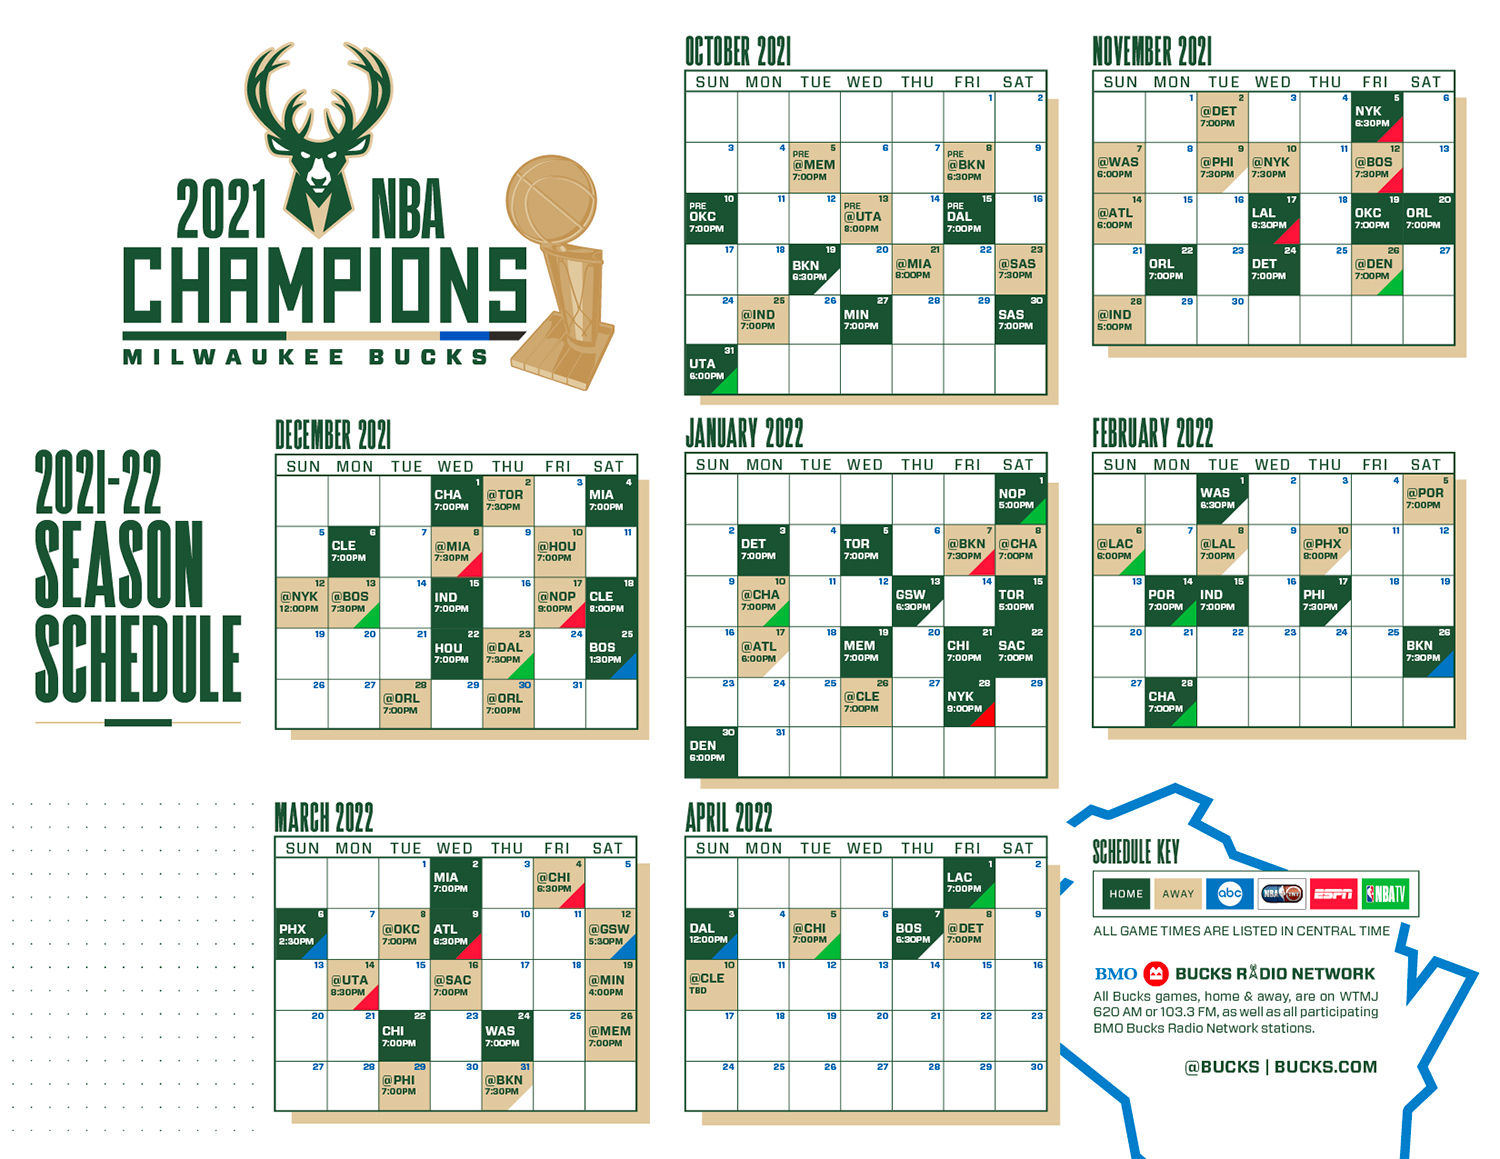 Milwaukee Bucks announce 2021-22 regular season schedule